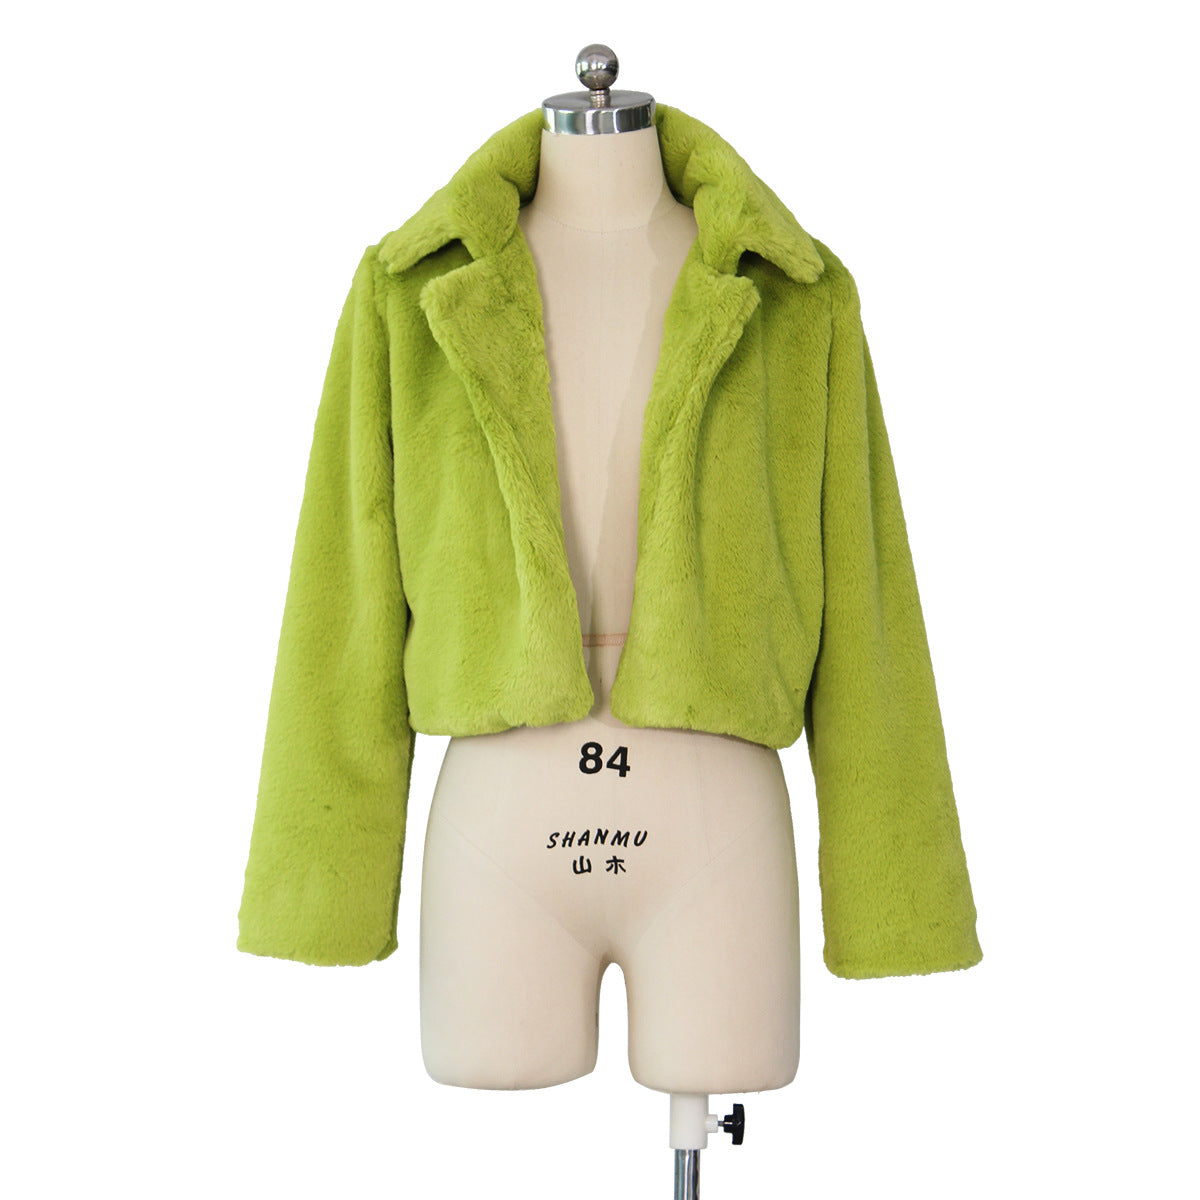 Fashion Artificial Fur Short Jacket Coats for Women